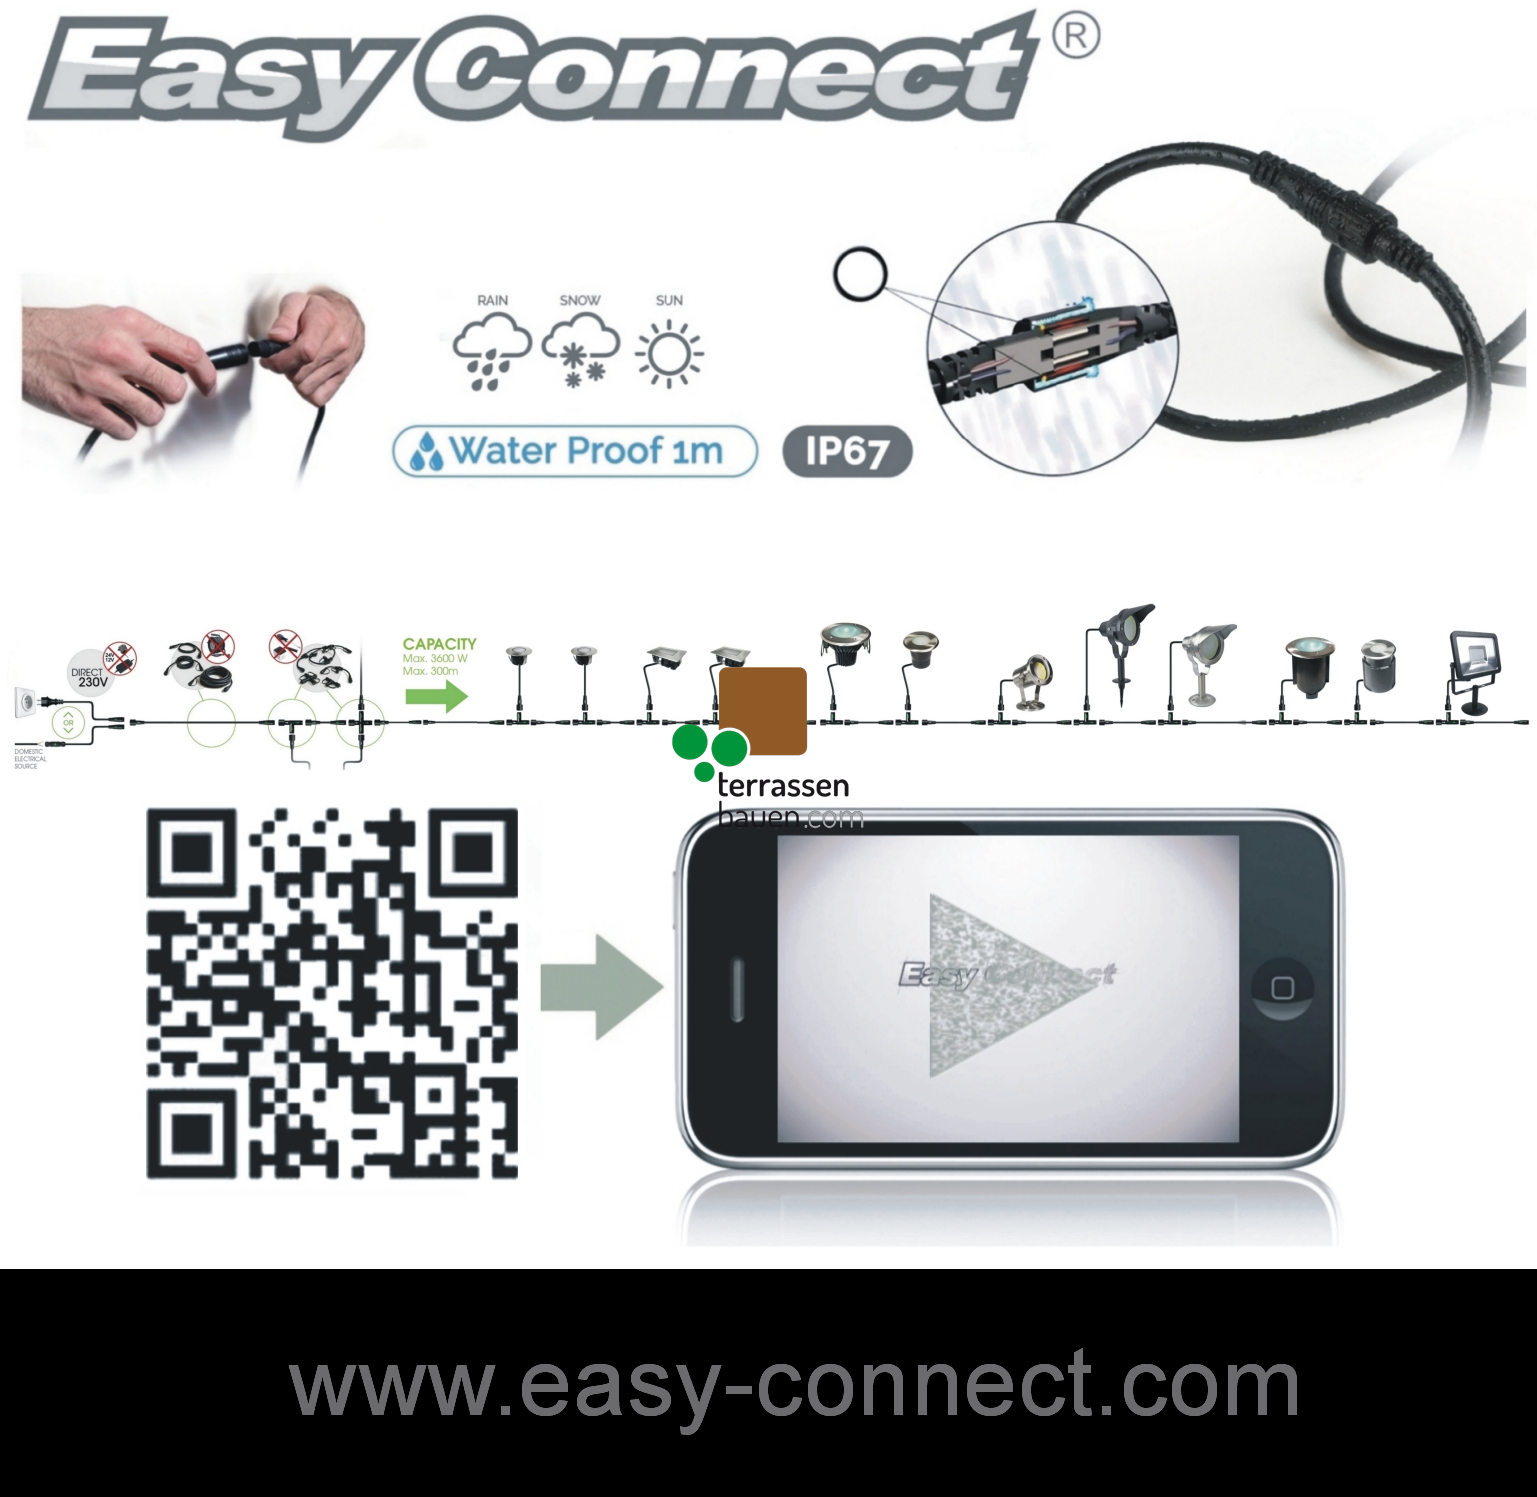 EasyConnect Anschlusskabel für den Direktanschluss, 230VAC an EasyConnect